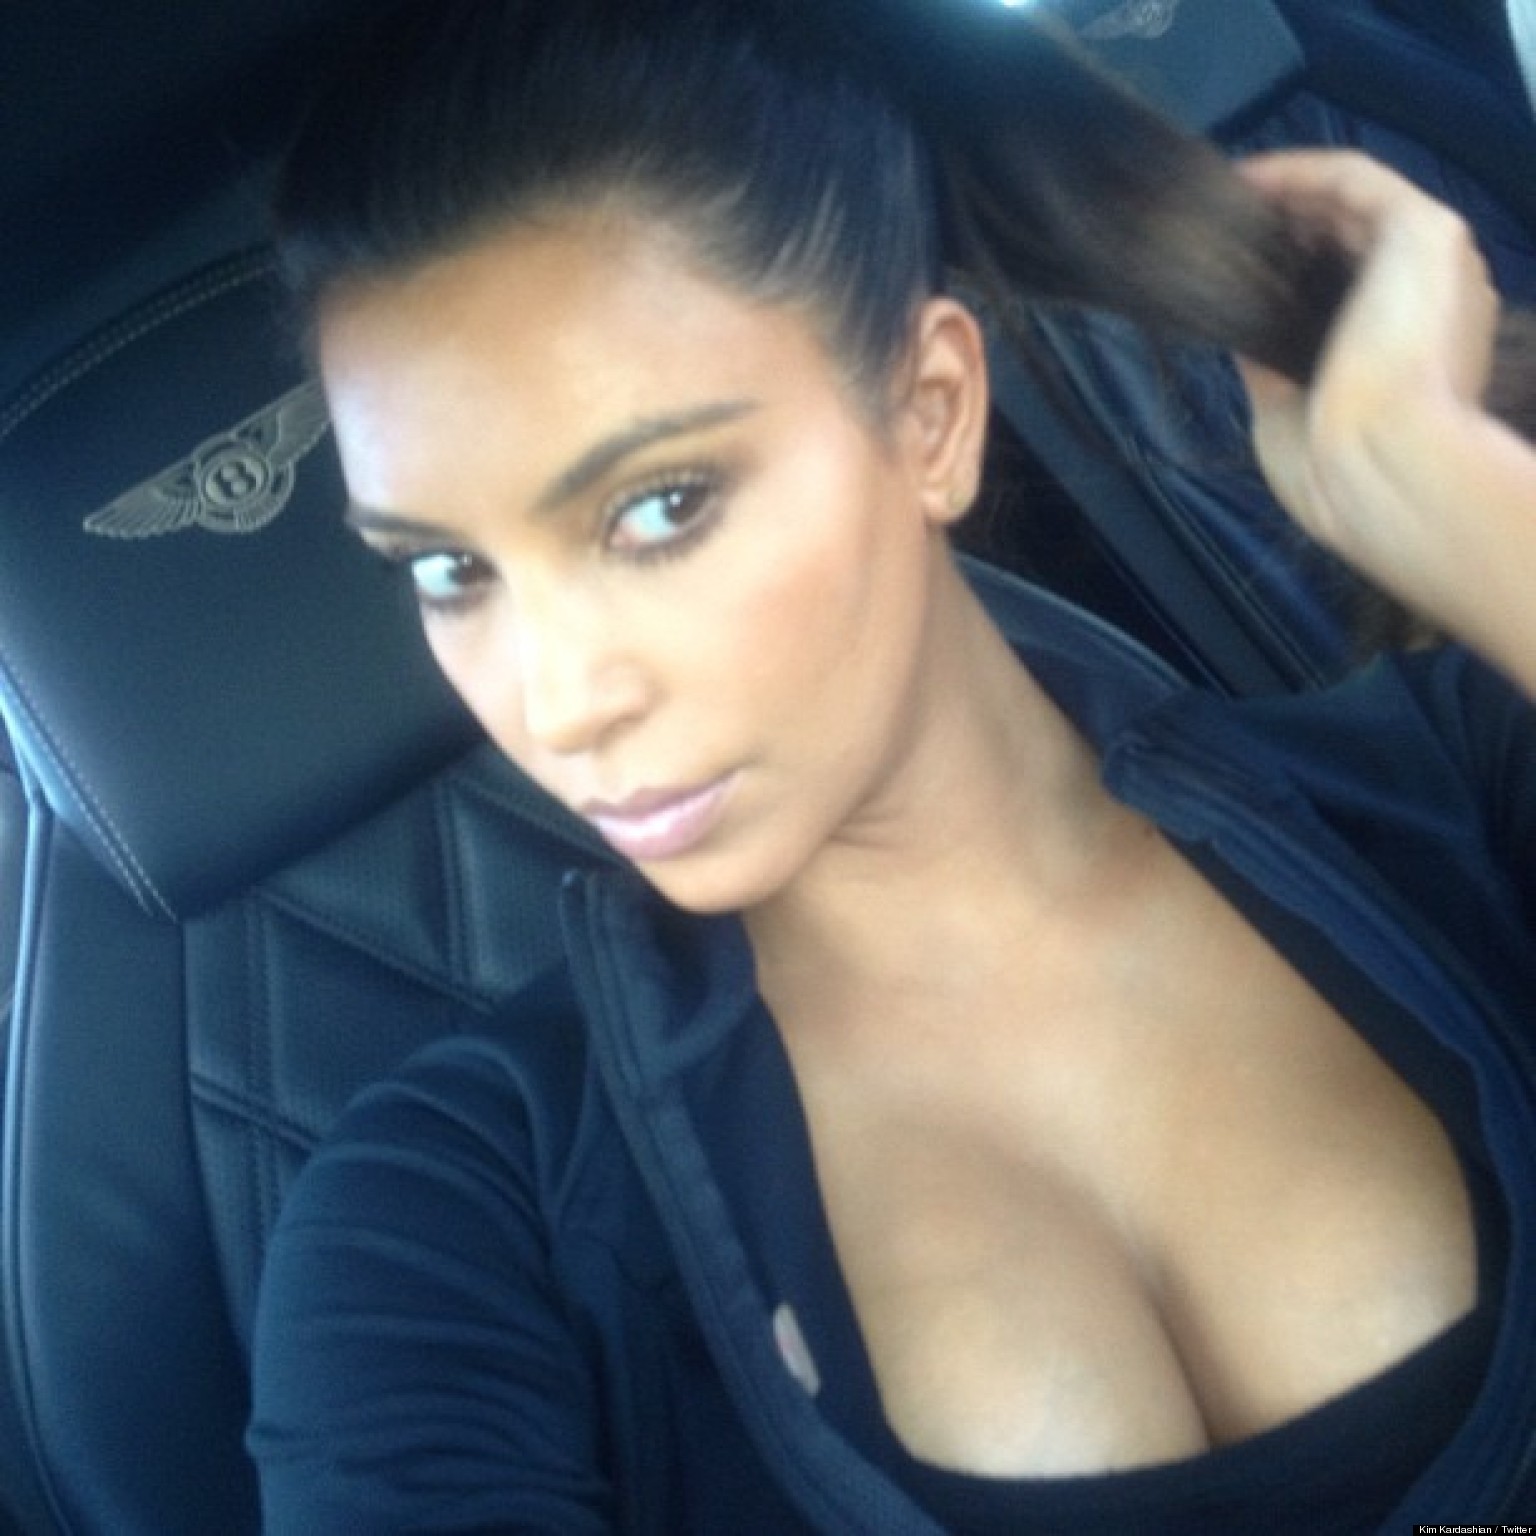 Kim Kardashian Sexy (4 Hot Photos) - Yolo Celebs